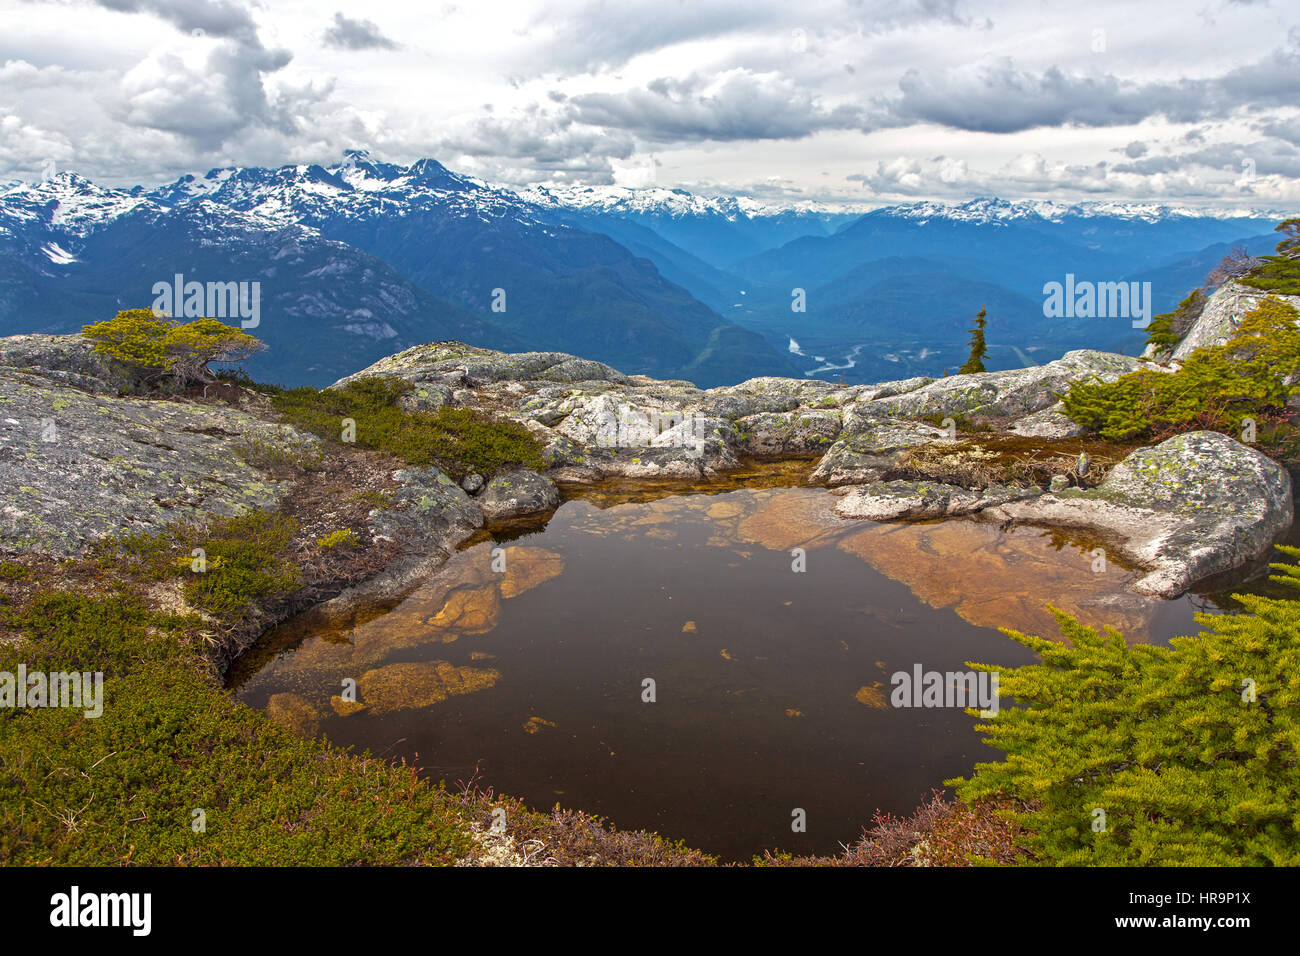 Petit lac alpin avec chaîne de montagnes Tantalus, paysage pittoresque des montagnes de la côte de la Colombie-Britannique. Randonnée de la mer au ciel à Squamish, dans le Pacifique Nord-Ouest du Canada Banque D'Images